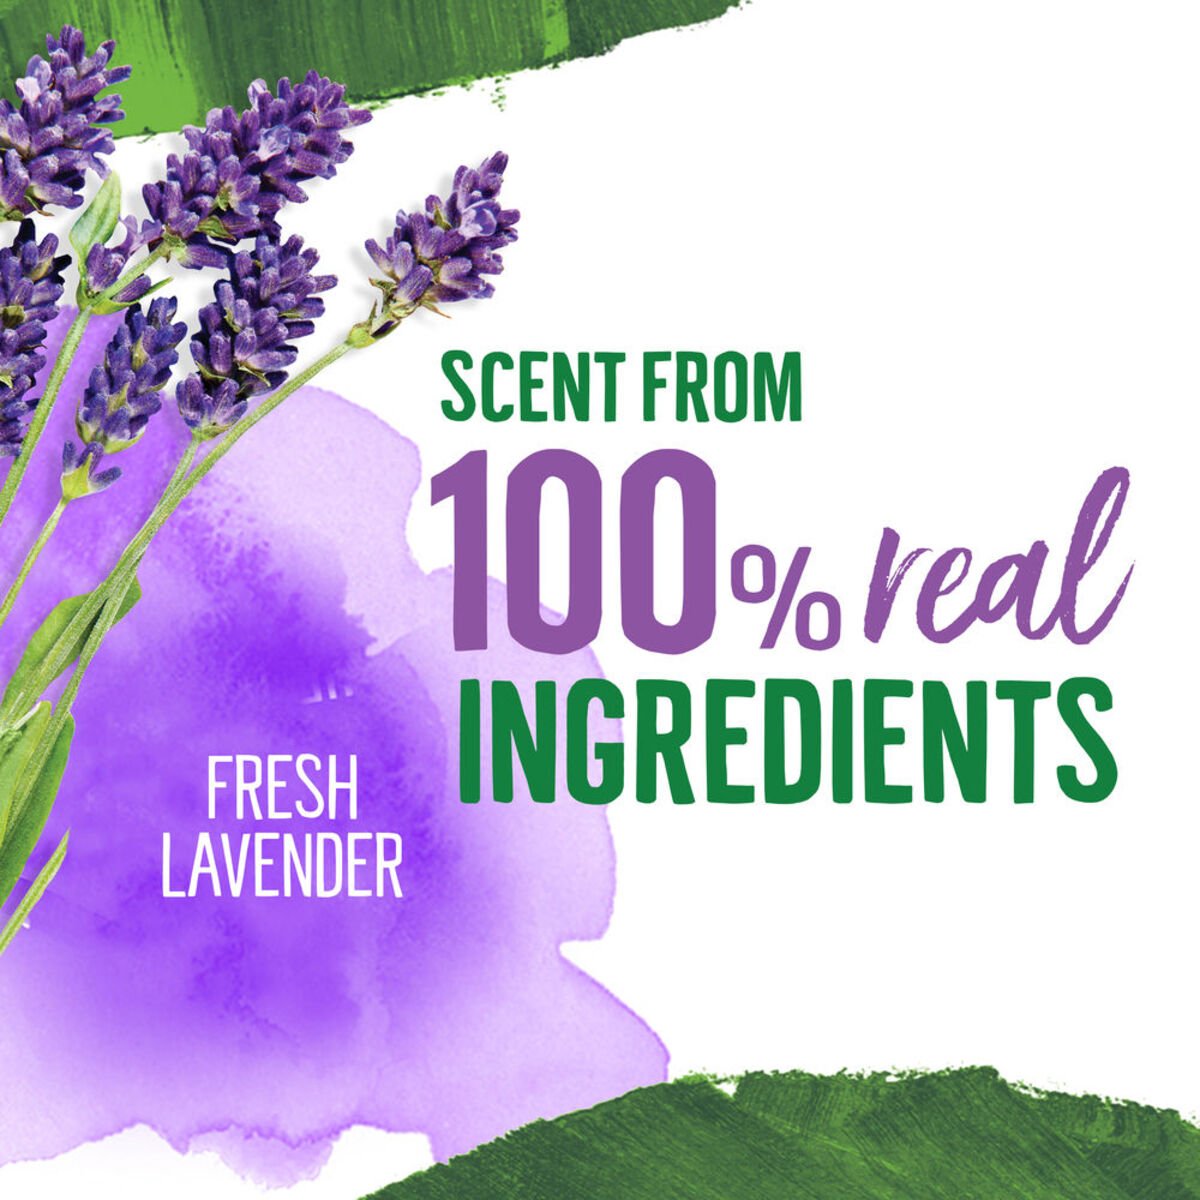 Seventh Generation Plant Based Detergent Lavender 1Litre